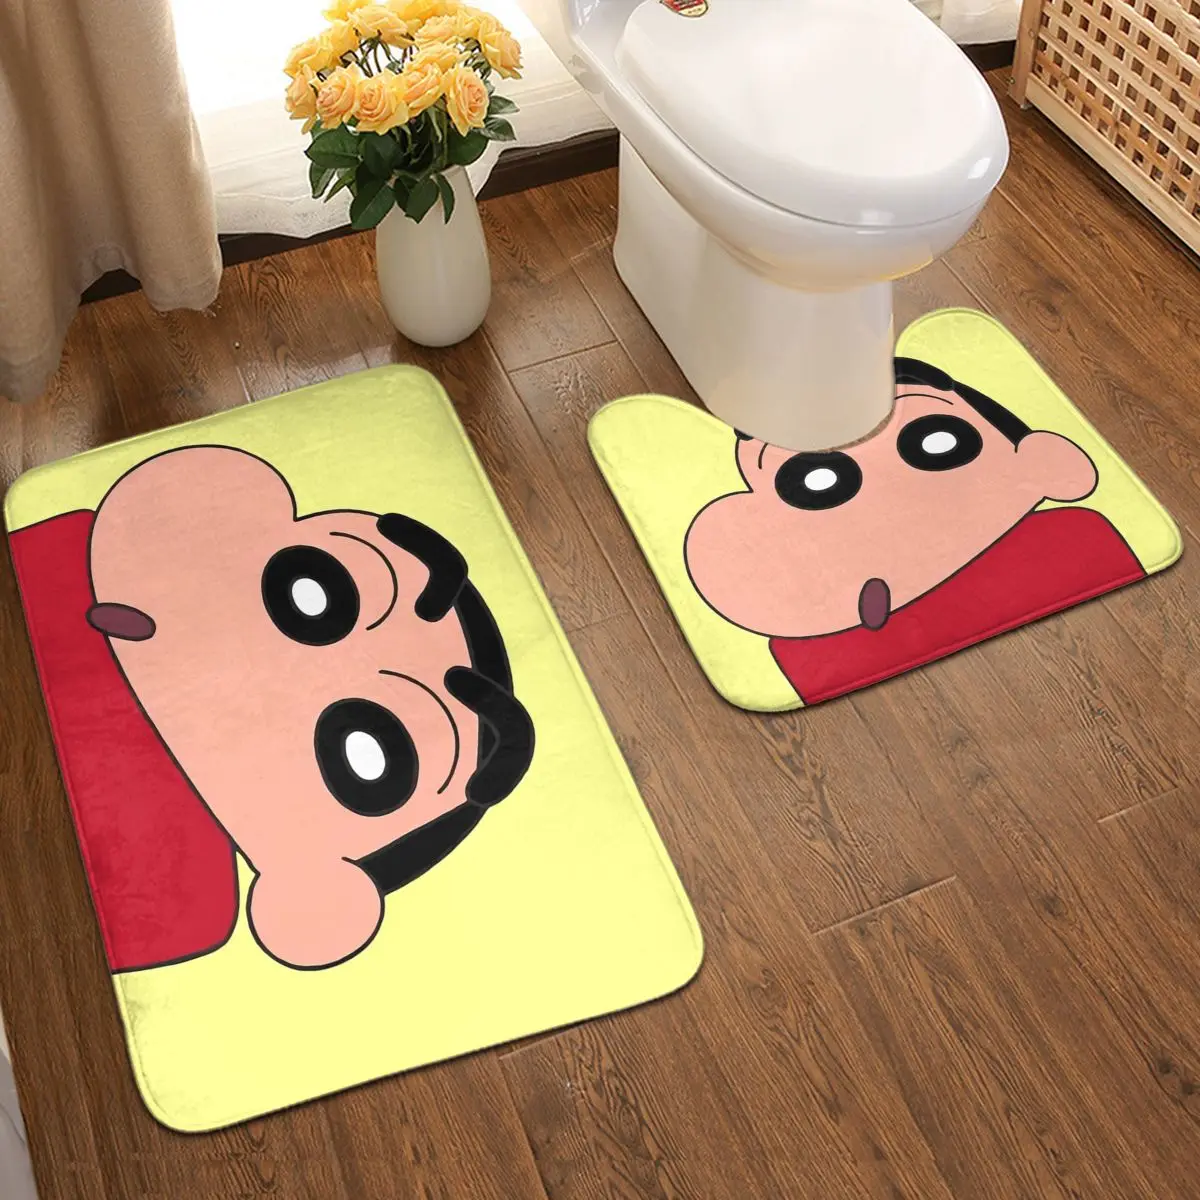 אנימה אופנה האמבטיה שטיח מחצלות להגדיר קליטת מים ו-anti slip שטיח הרצפה 2Piece נגד החלקה רפידות שטיחון לאמבטיה + Contour